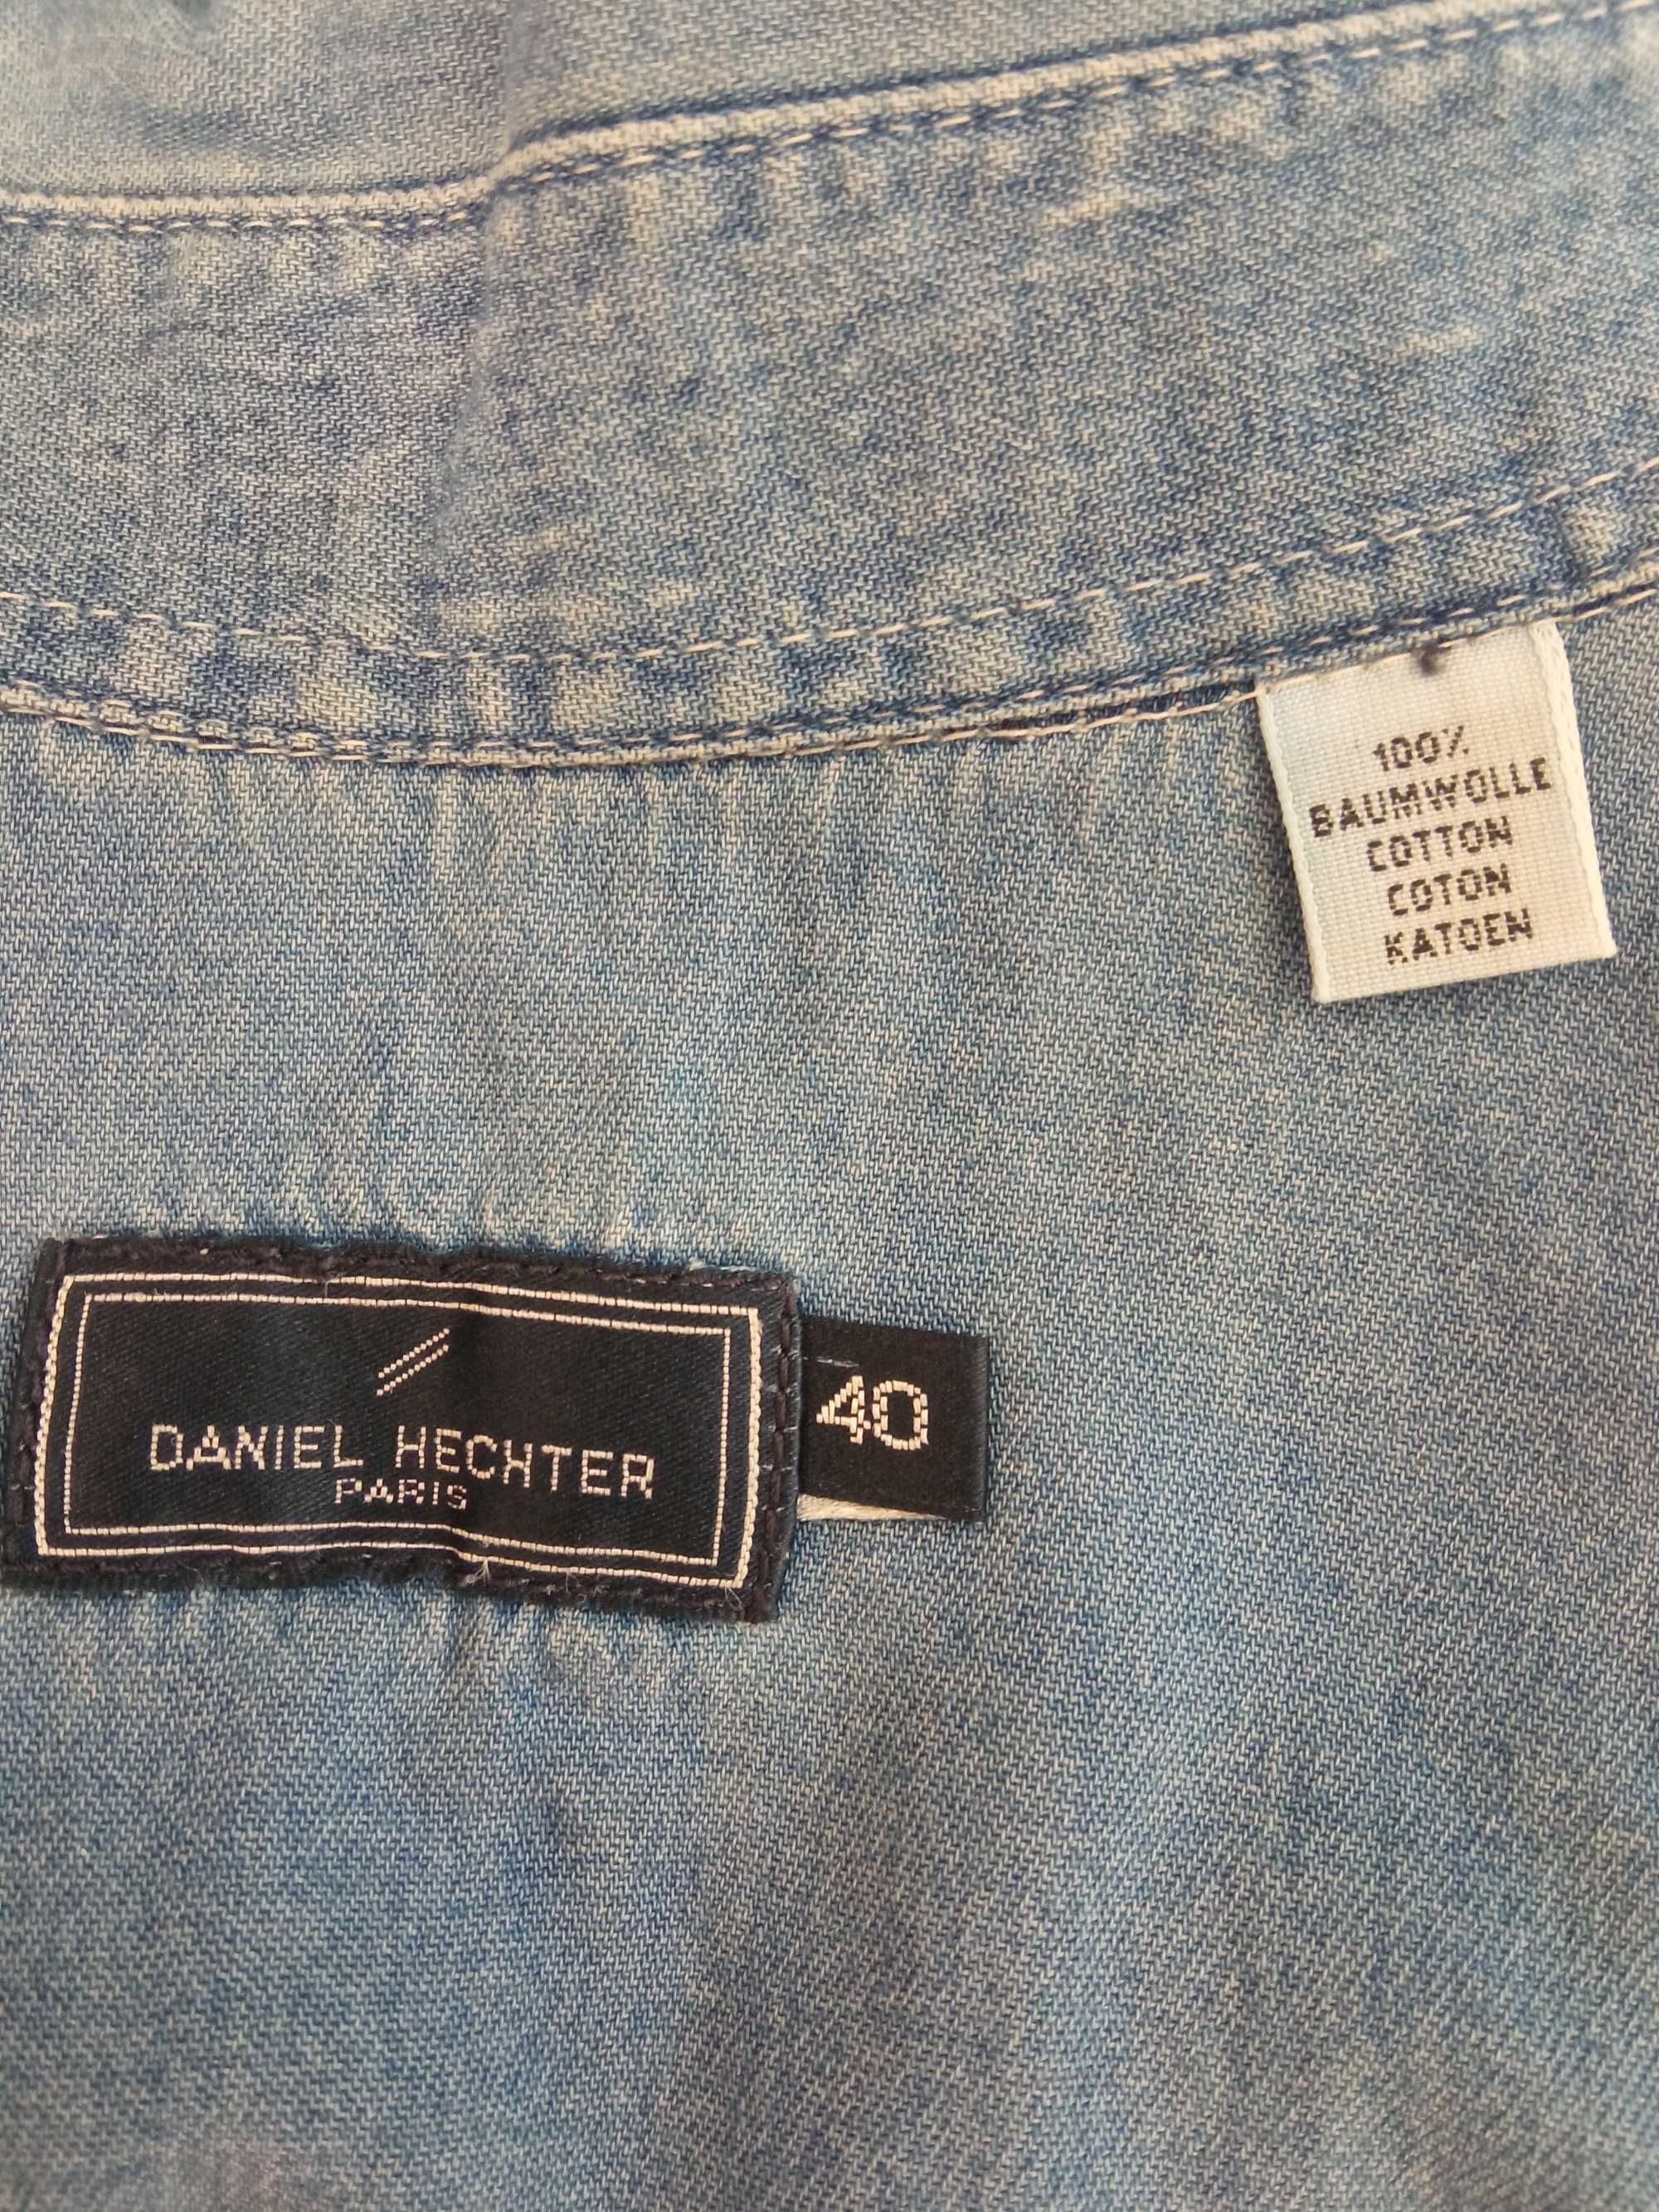 DANIEL HECHTER jeansowa bluzka bez rękawów r. 40